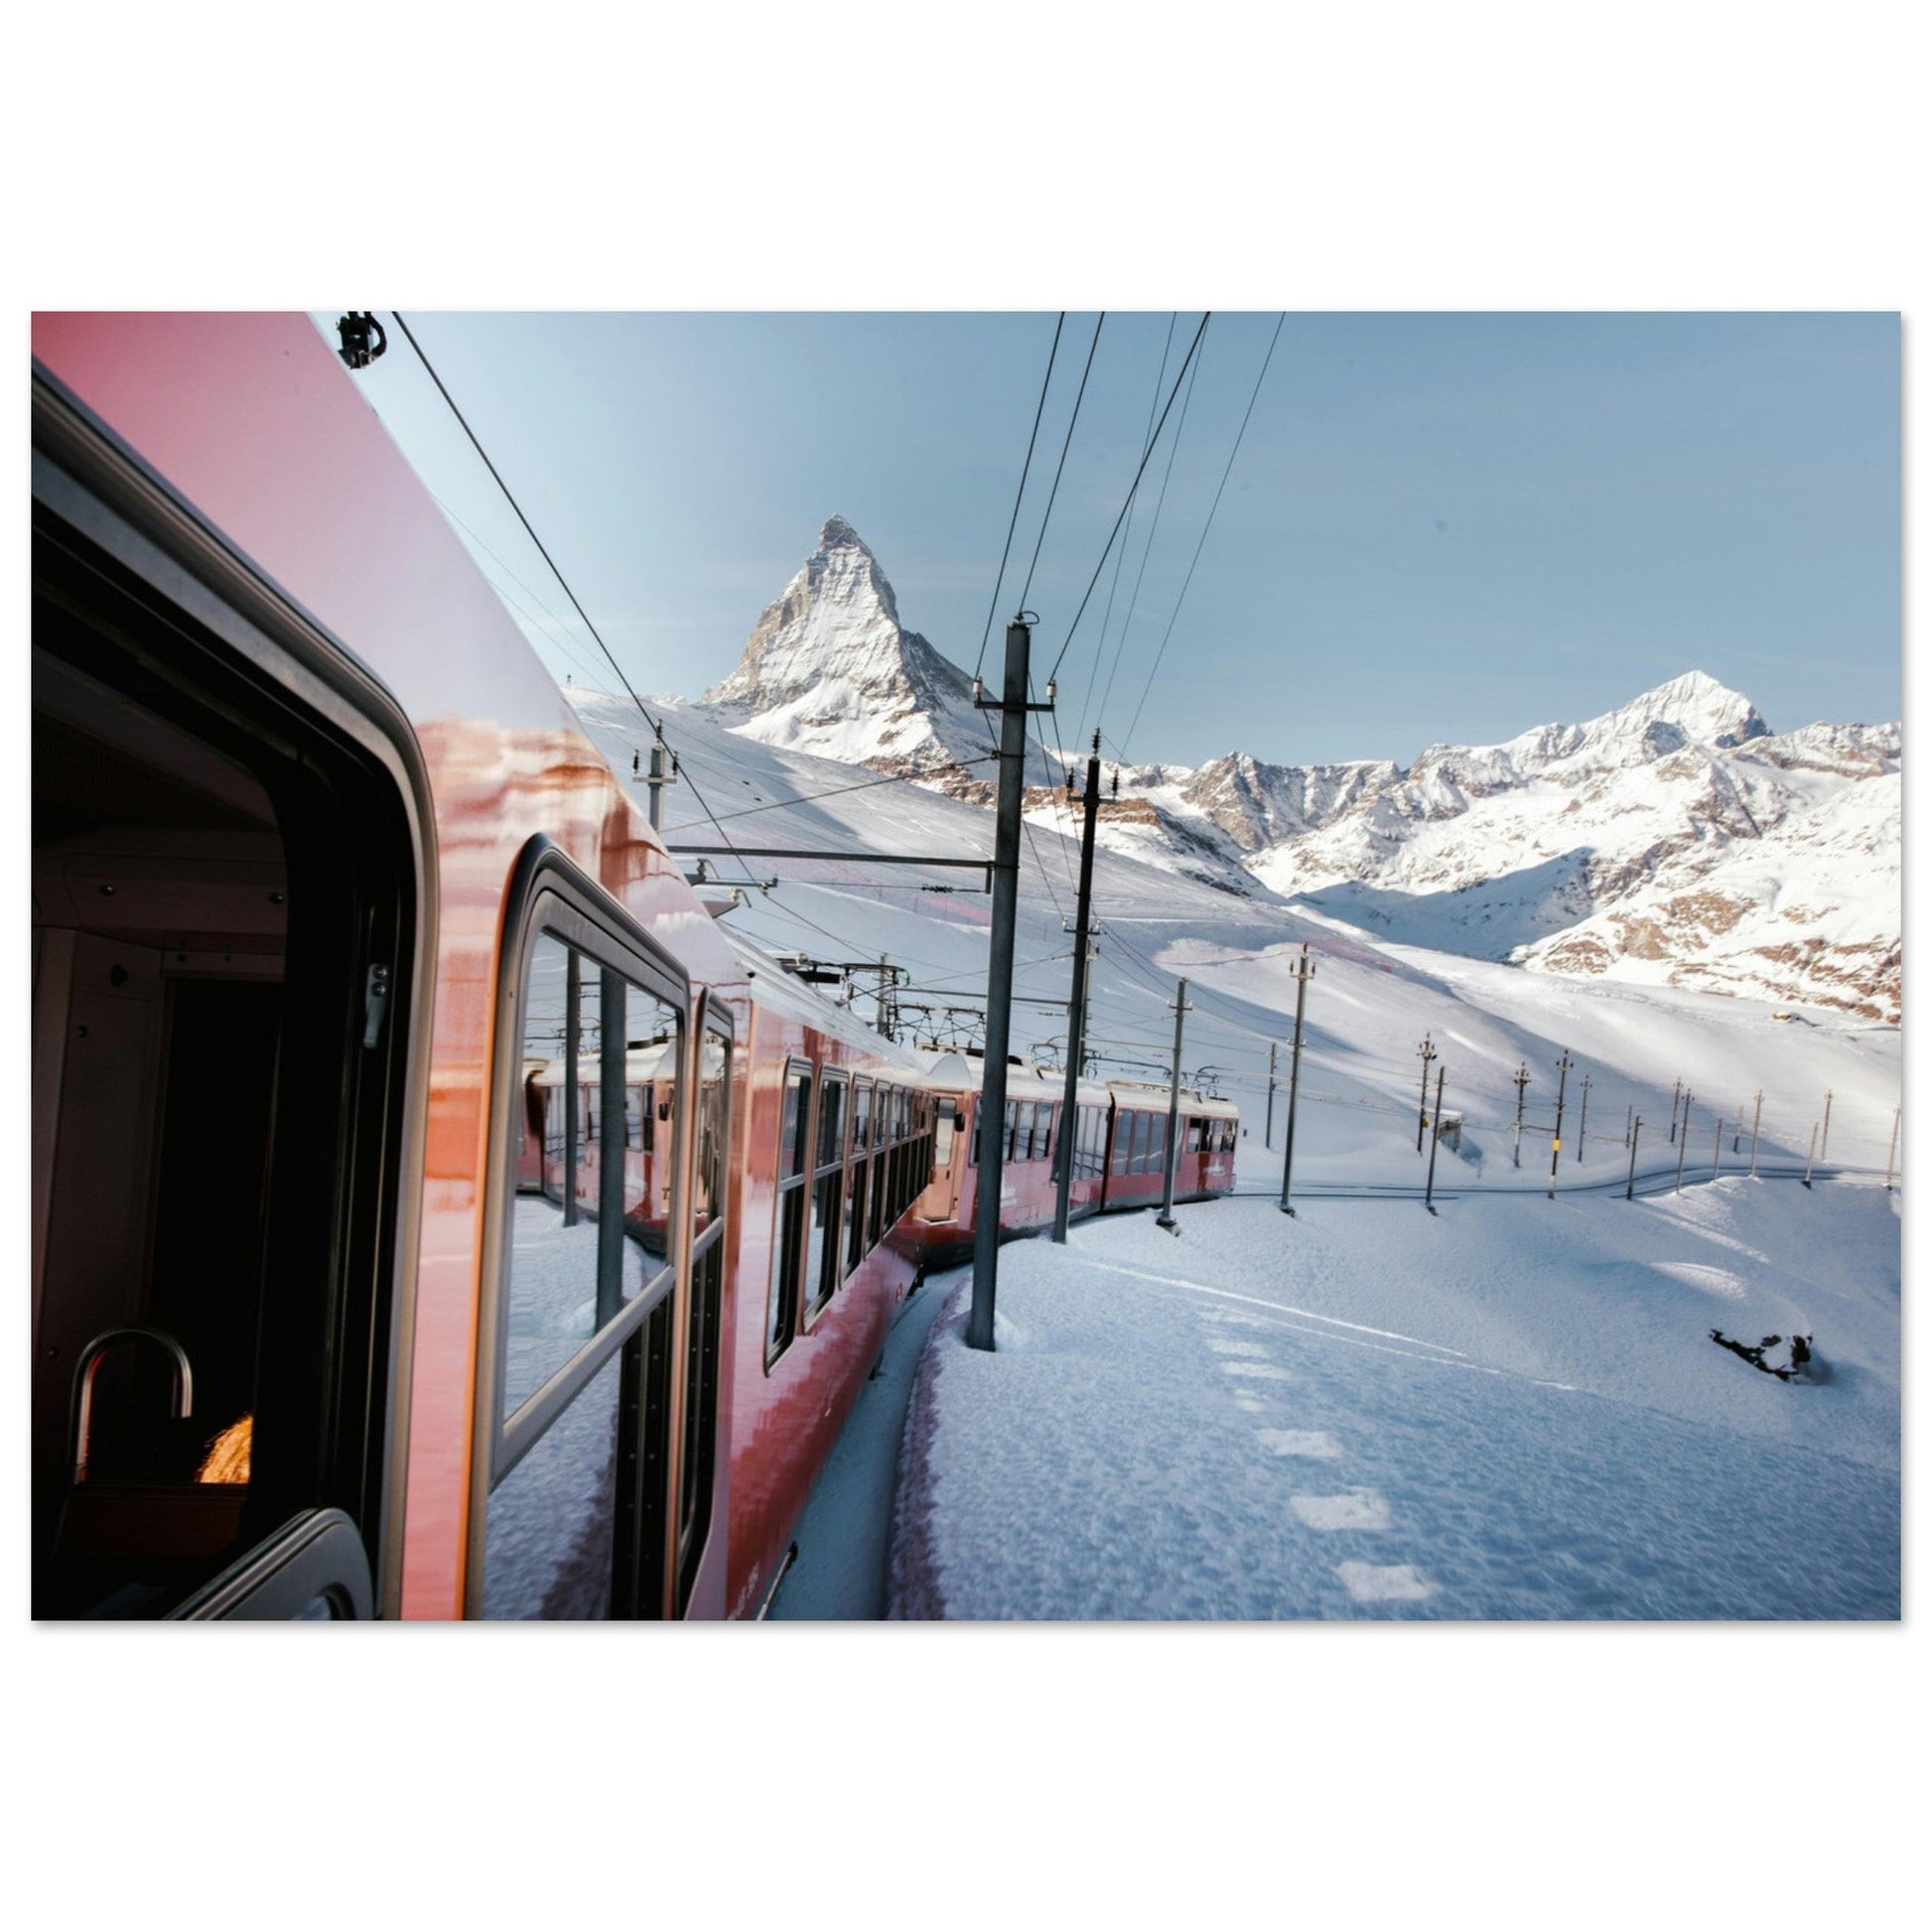 Vente Photo du train de Zermatt, Alpes Suisse #2 - Tableau photo alu montagne